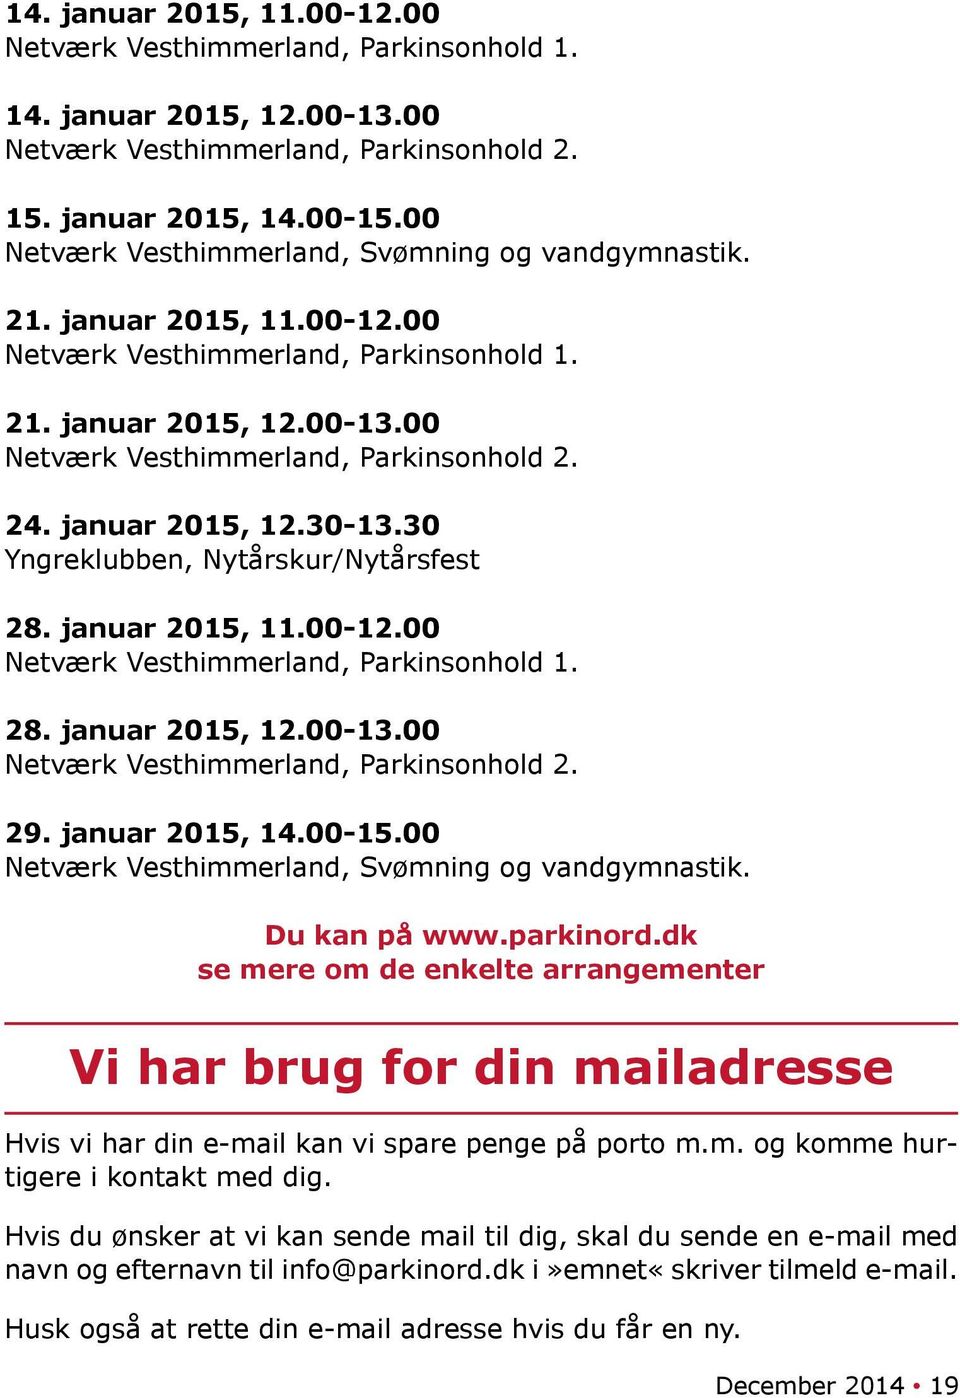 januar 2015, 12.30-13.30 Yngreklubben, Nytårskur/Nytårsfest 28. januar 2015, 11.00-12.00 Netværk Vesthimmerland, Parkinsonhold 1. 28. januar 2015, 12.00-13.00 Netværk Vesthimmerland, Parkinsonhold 2.